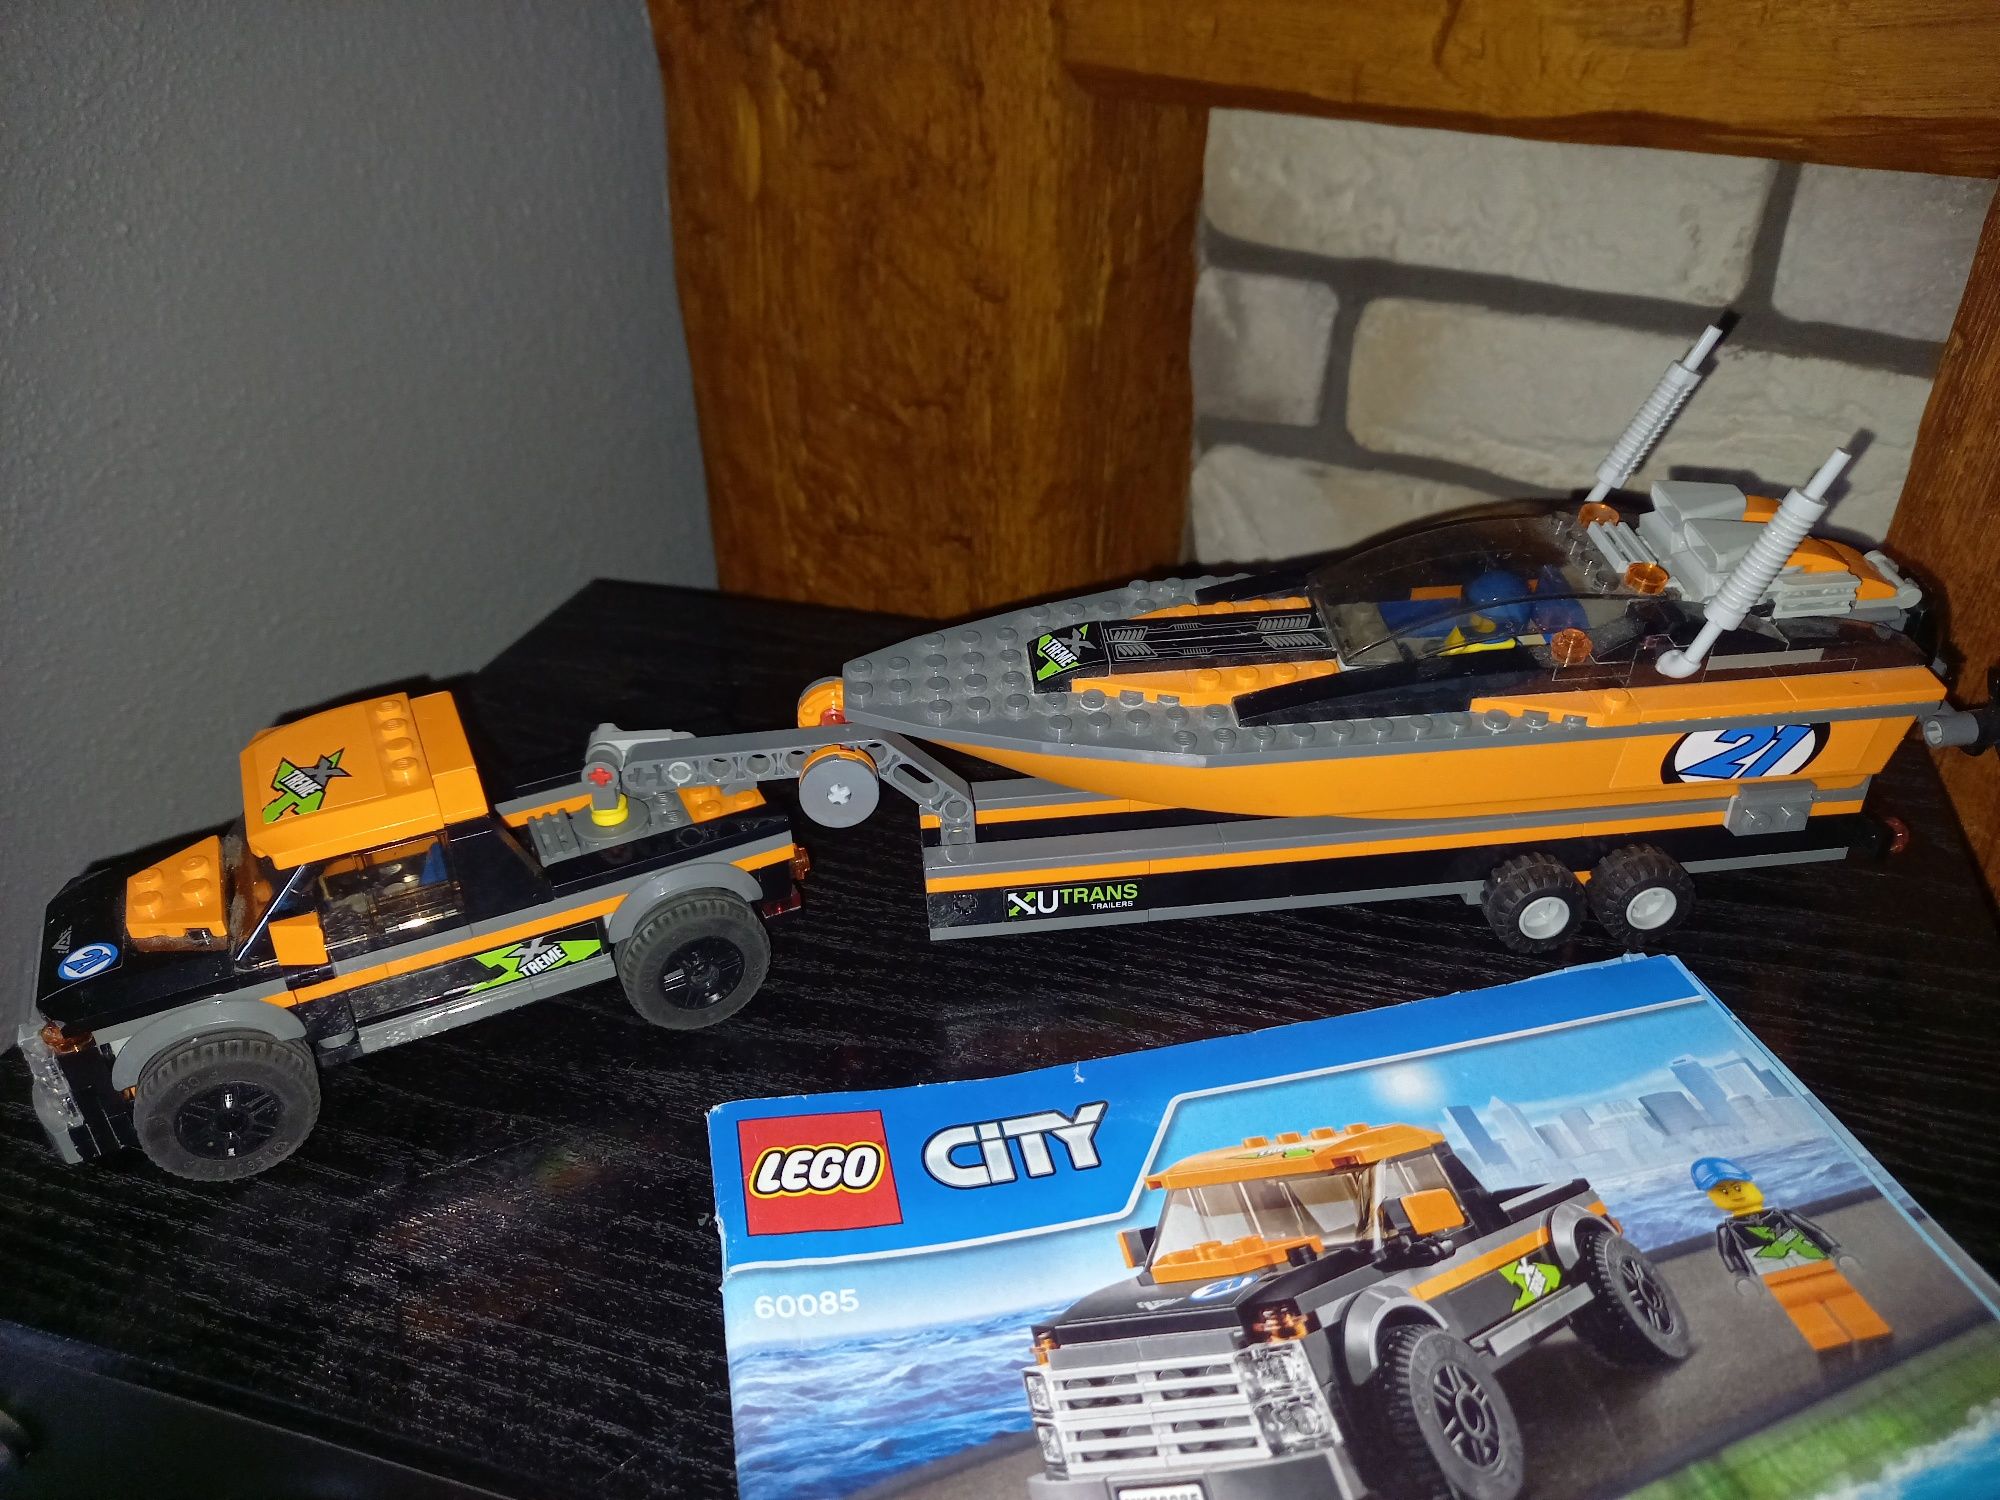 Klocki Lego City